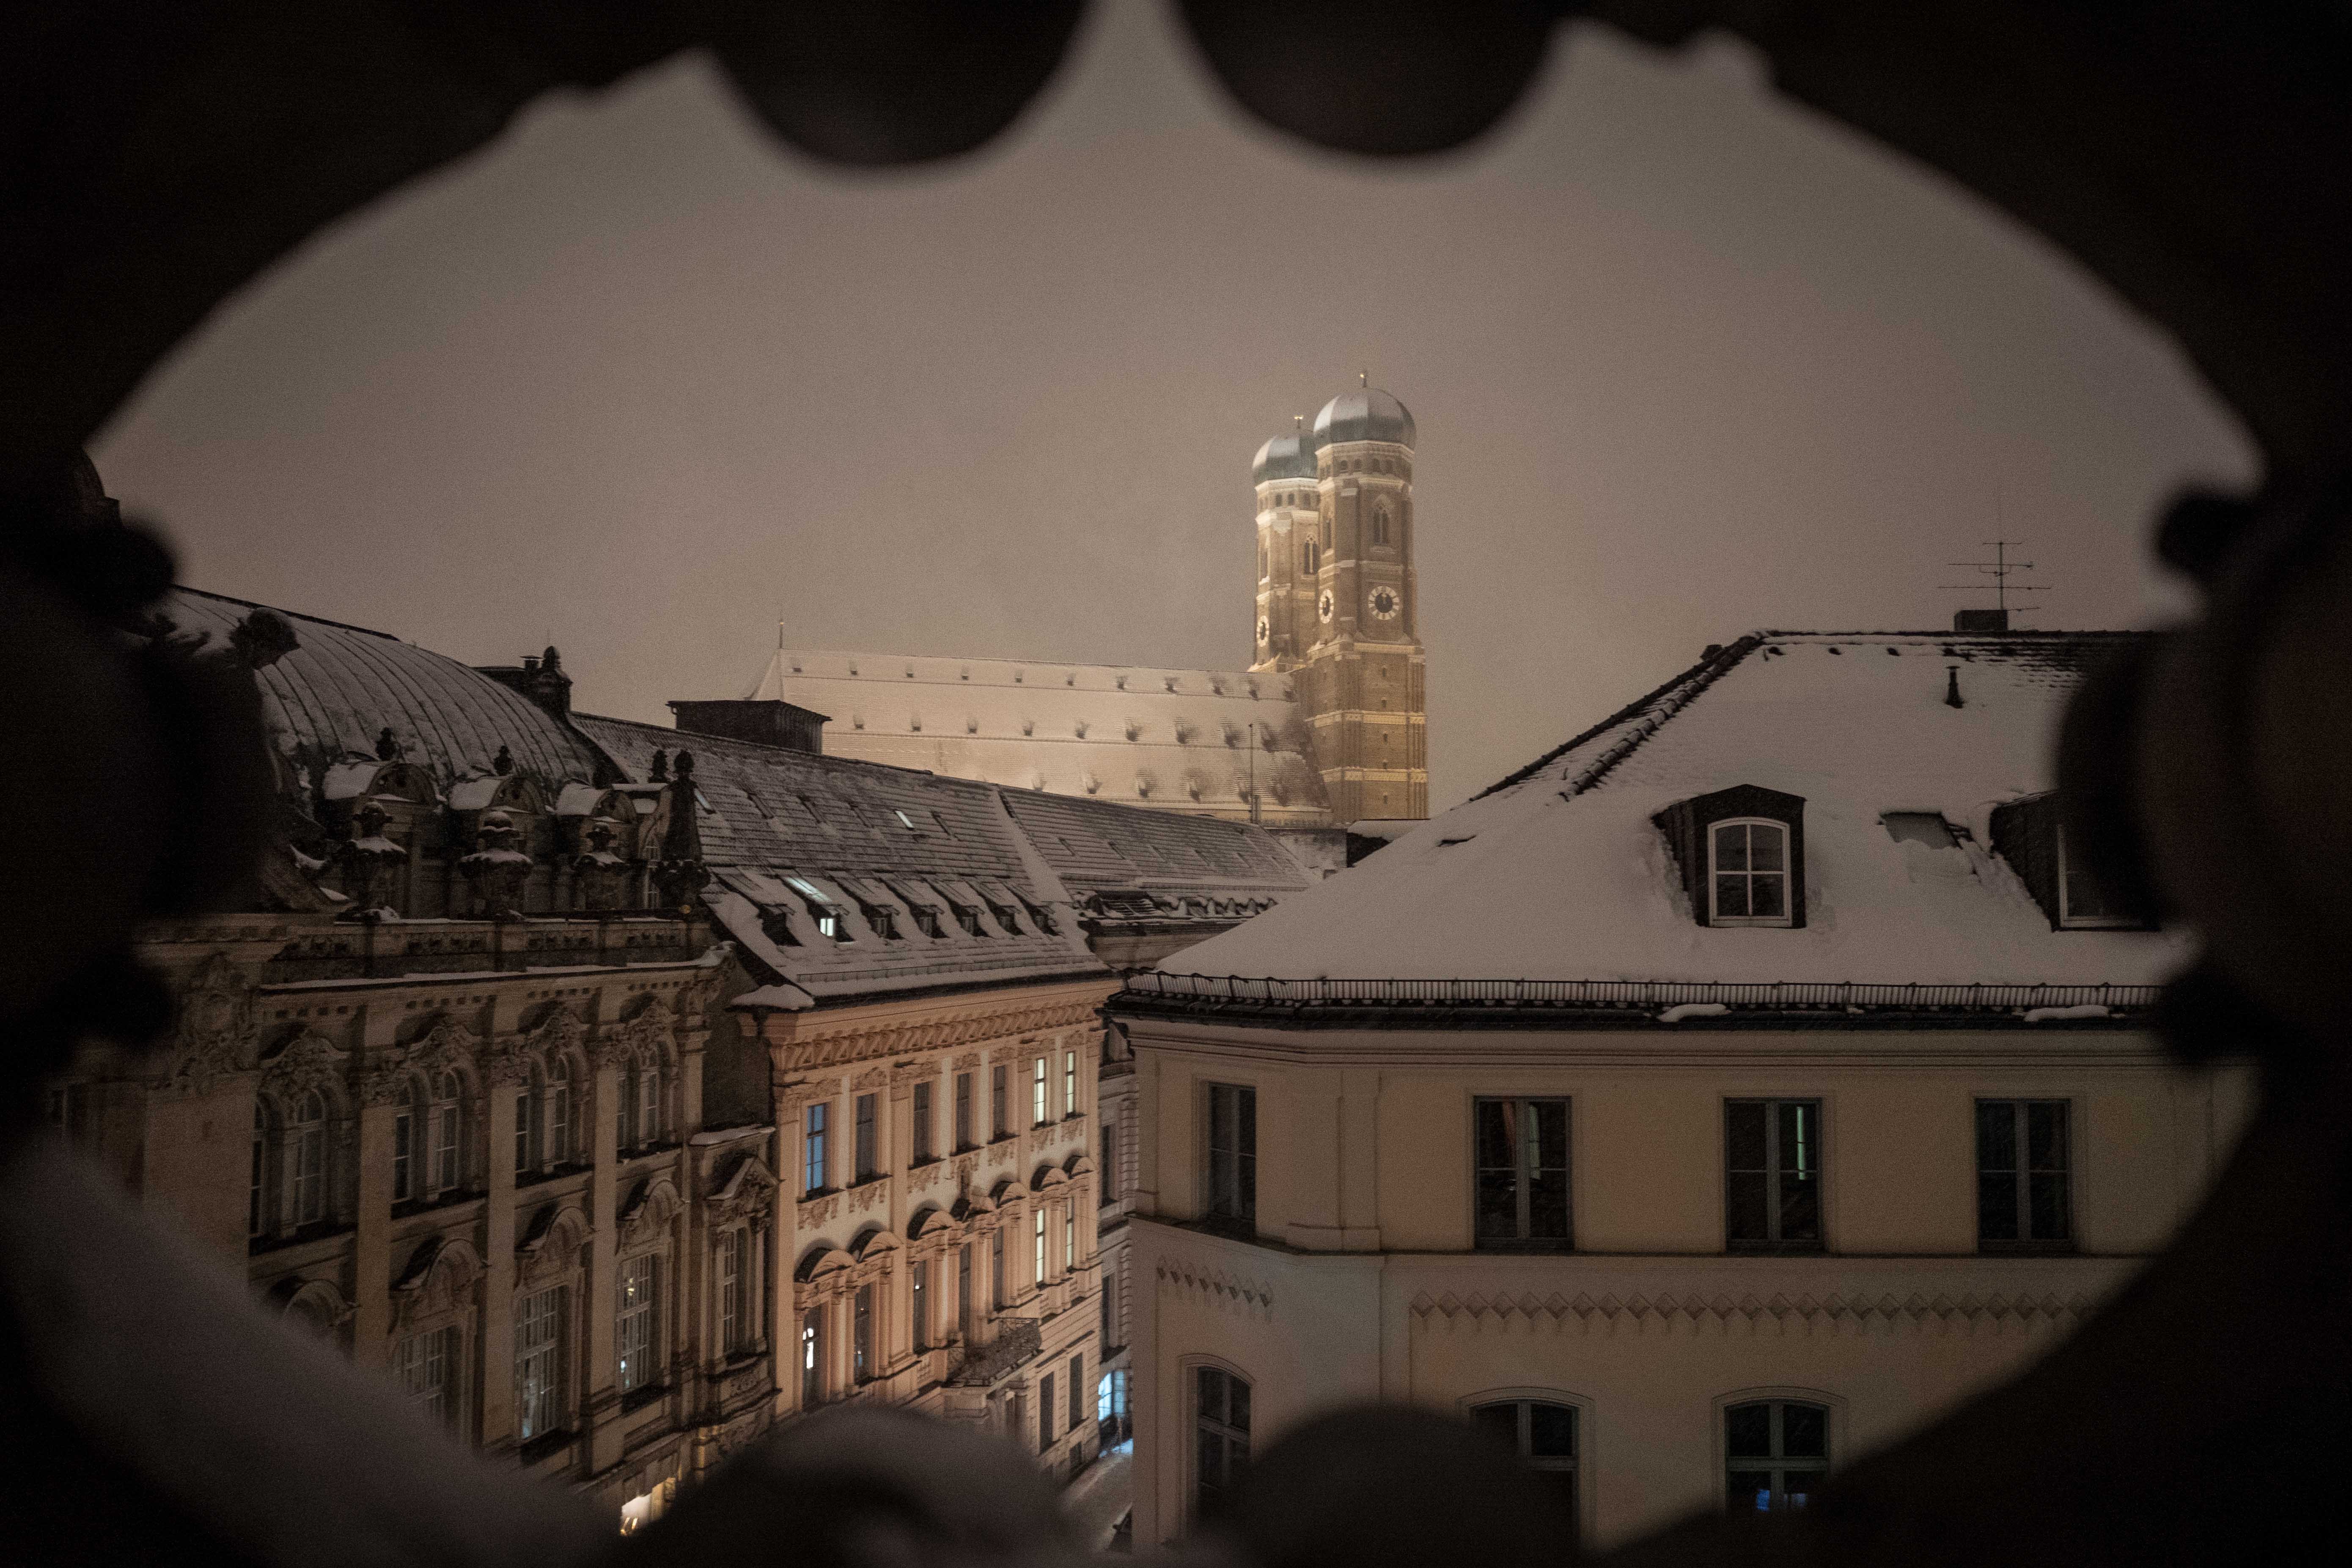 Das Bild zeigt eine nächtliche, schneebedeckte Stadtlandschaft mit historischen Gebäuden und der Frauenkirche München im Hintergrund. Die Umgebung ist von Schnee bedeckt und gibt ein ruhiges, friedliches Gefühl. Im Vordergrund sind schneebedeckte Dächer von Gebäuden zu sehen, die architektonische Details aufweisen. Es gibt eine Reihe von Fenstern an den Gebäuden im Vordergrund, einige sind beleuchtet. Der Hintergrund wird von der beleuchteten Frauenkirche dominiert; Die Aufnahme scheint durch eine Art Rahmen oder Öffnung gemacht worden zu sein, da die oberen Ränder des Bildes unregelmäßig geformt sind. Aufgenommen mit der Leica Q, als Wandbild zu erwerben.